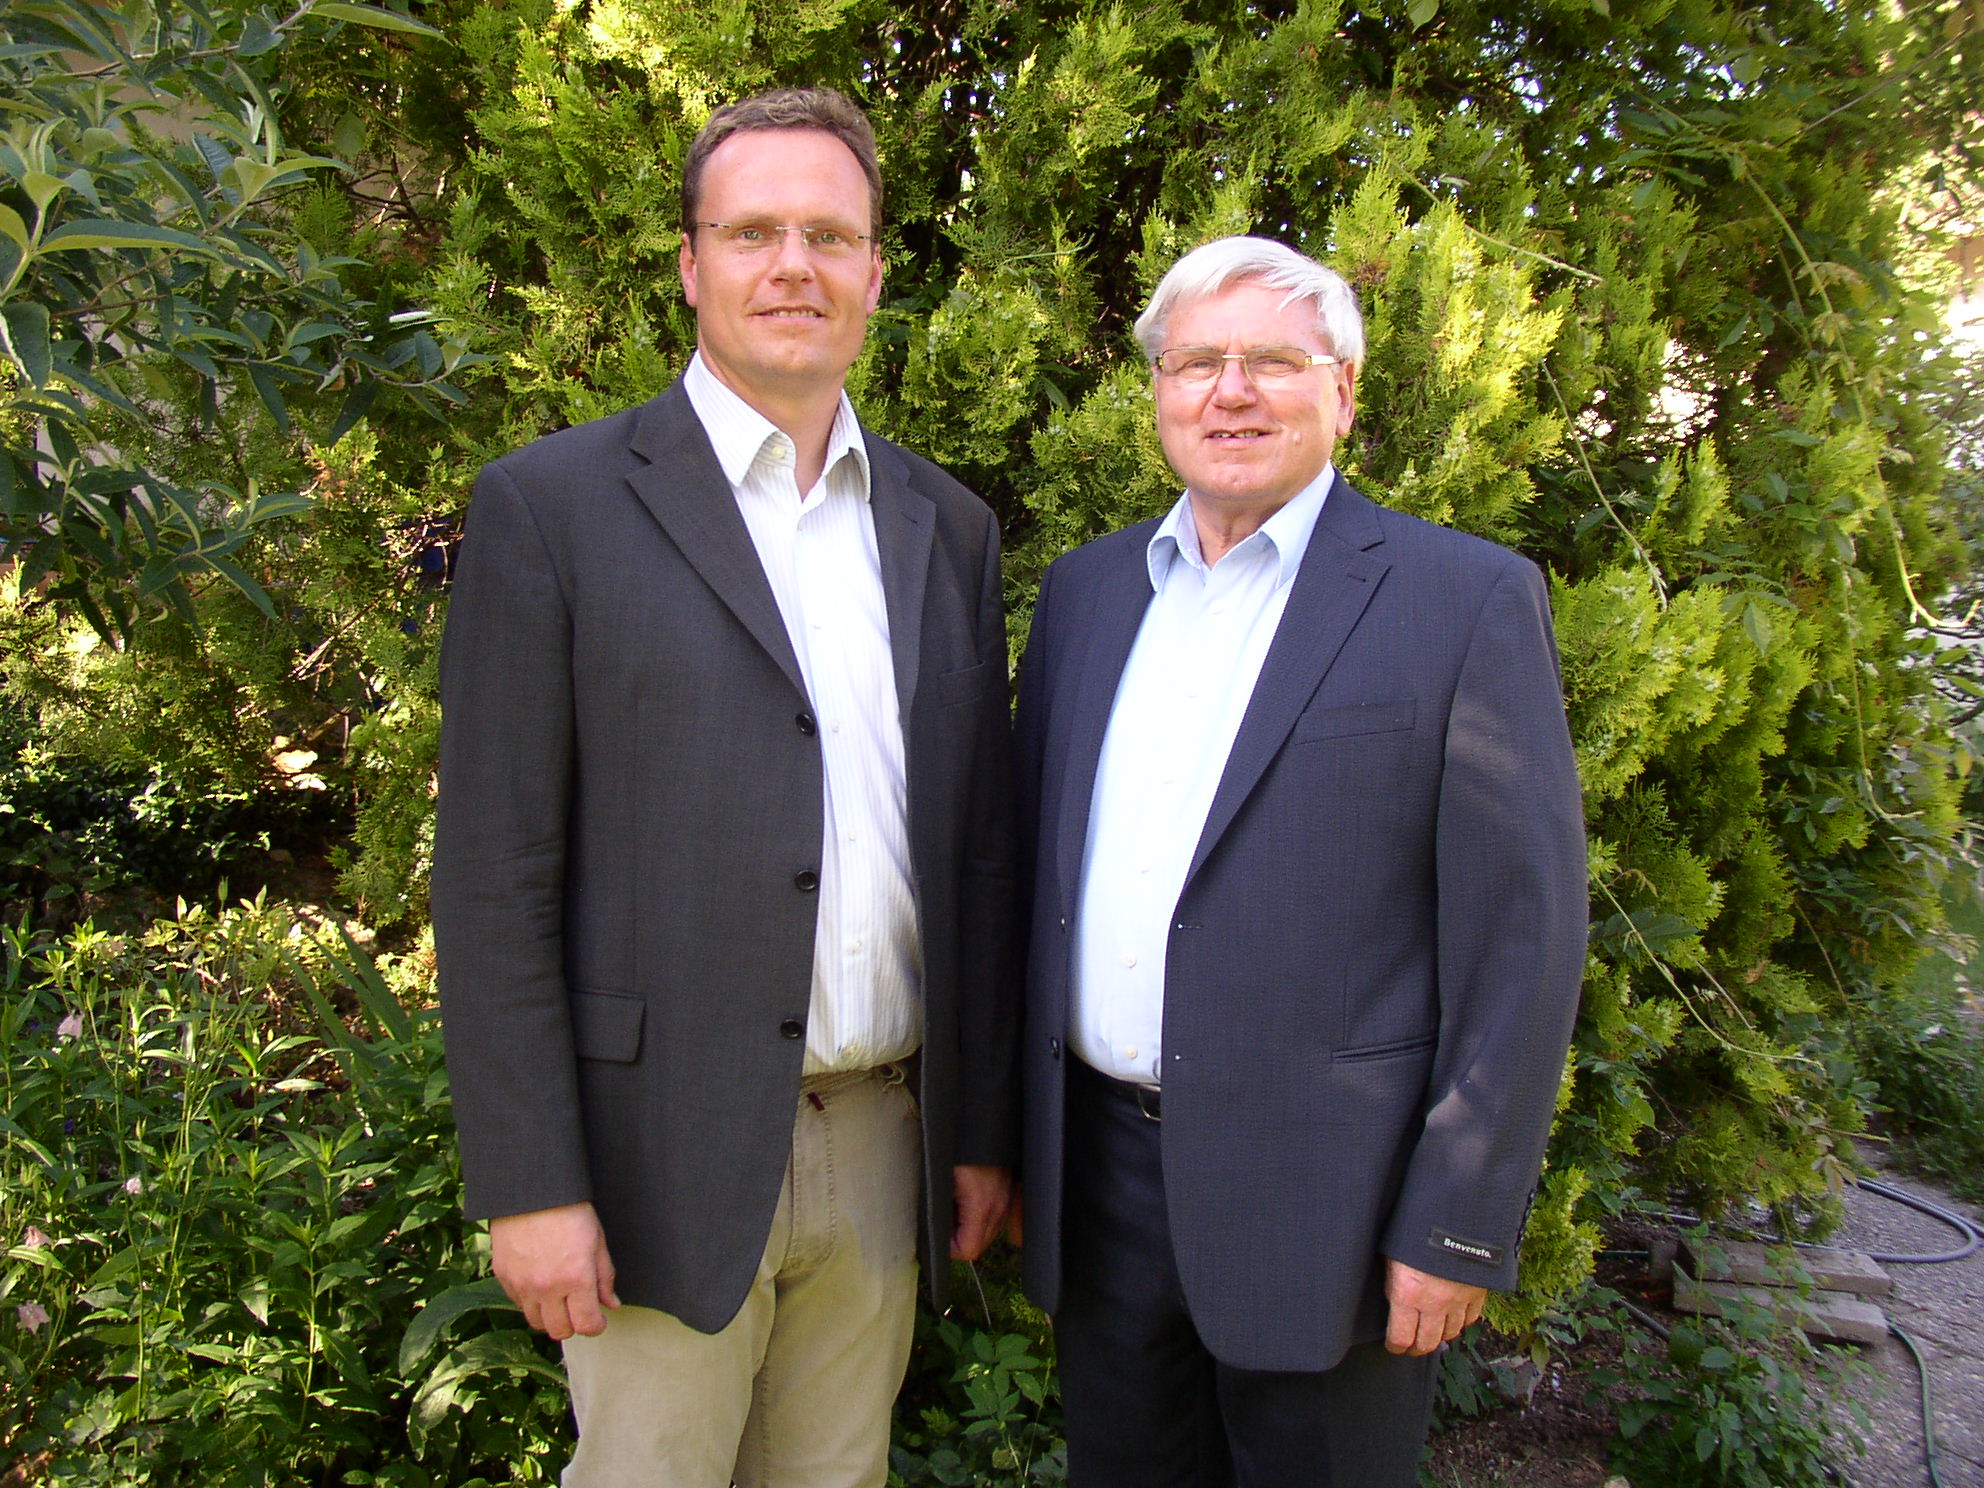 Hermann und Thomas Löhnert, die Gründer der Löhnert GmbH, stehen im Anzug vor einem grünen Busch